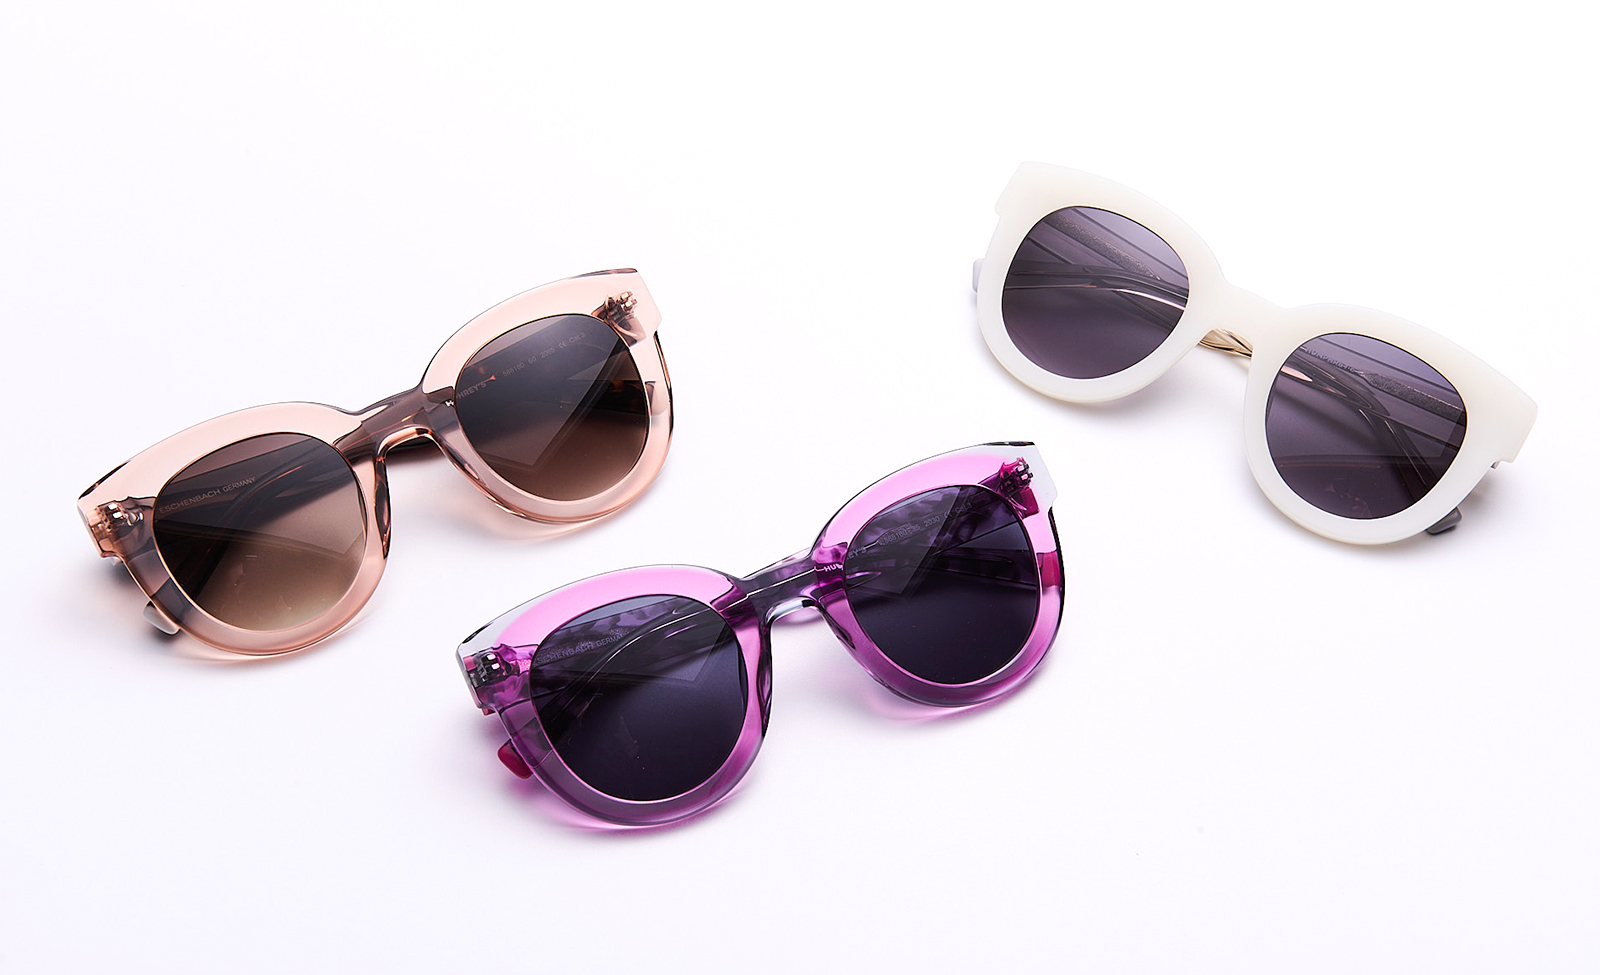 møtekul SNAZZY Sonnenbrille Damen -> Die trendigsten Sonnenbrillen für Damen  100% UV SCHUTZ I Zertifizierte Damen Sonnenbrille I Vintage Sunglasses  woman I EUROPÄISCHES DESIGN (Milky Brown) : : Fashion